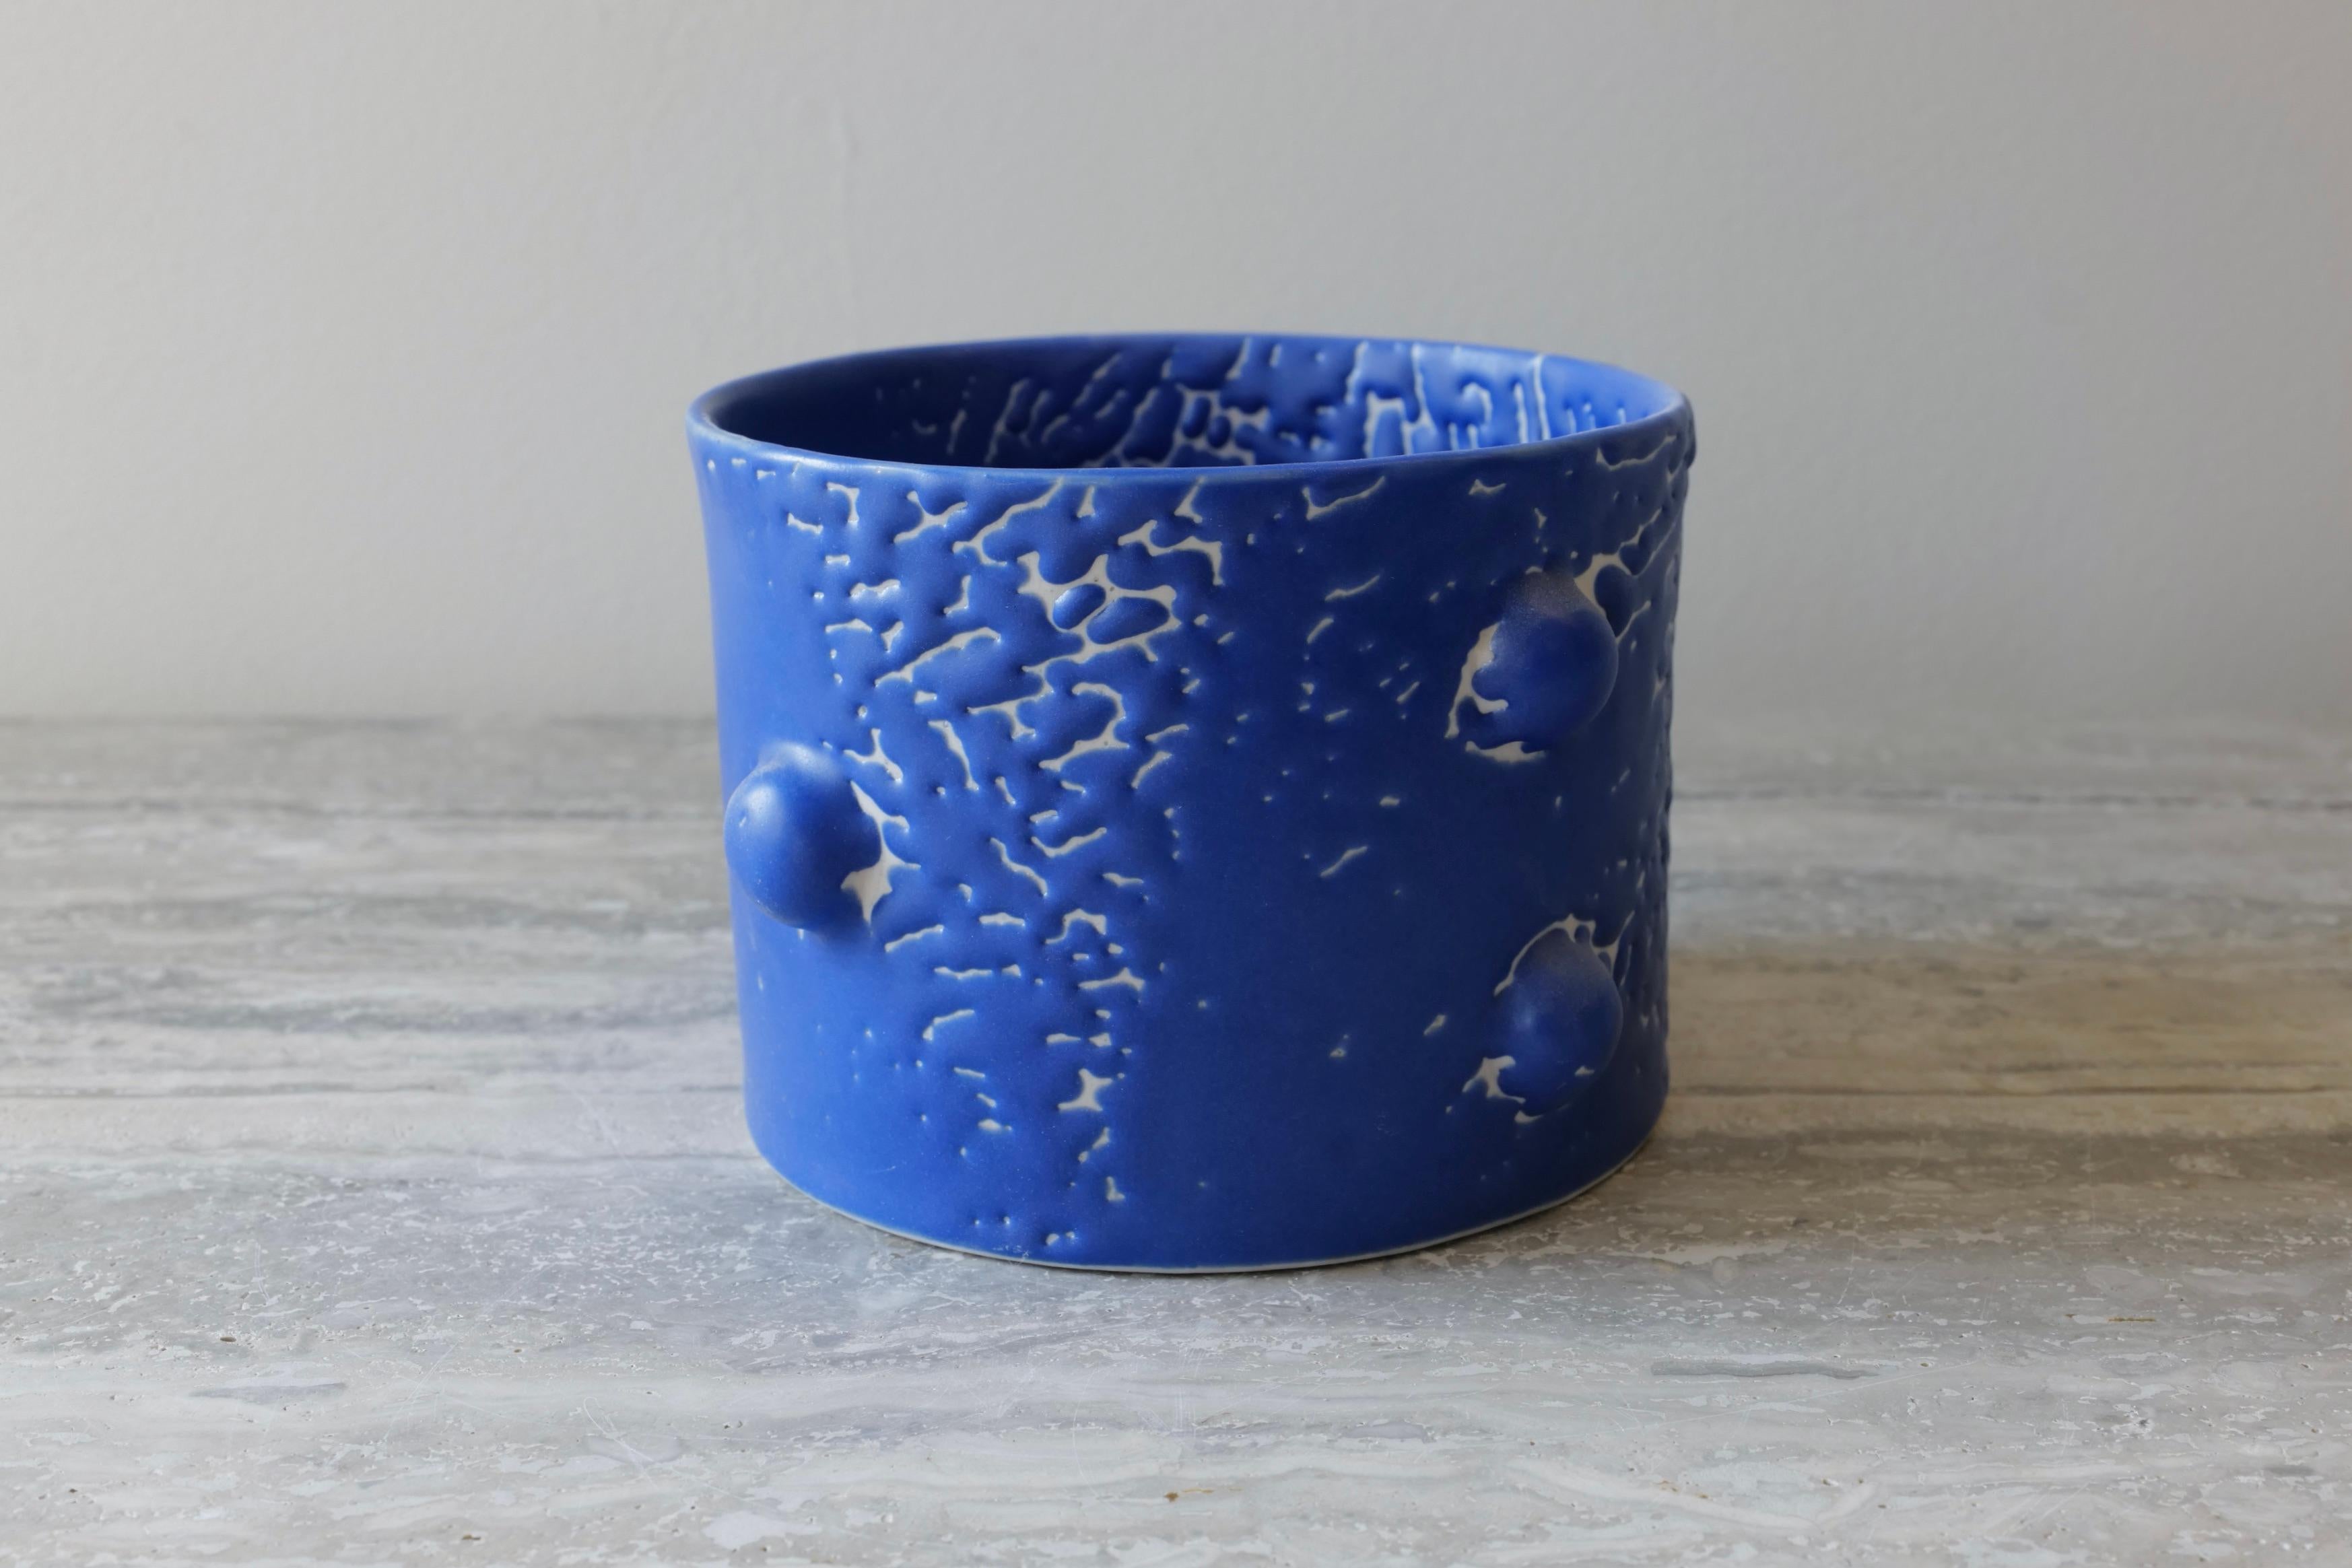 Diese kurze, elegante Vase ist aus Porzellan handgegossen und mit einer reichhaltigen mikrokristallinen Kobaltglasur glasiert, die auf dem gesamten Gefäß eine schöne Crawl-Struktur aufweist. Das Motiv der 